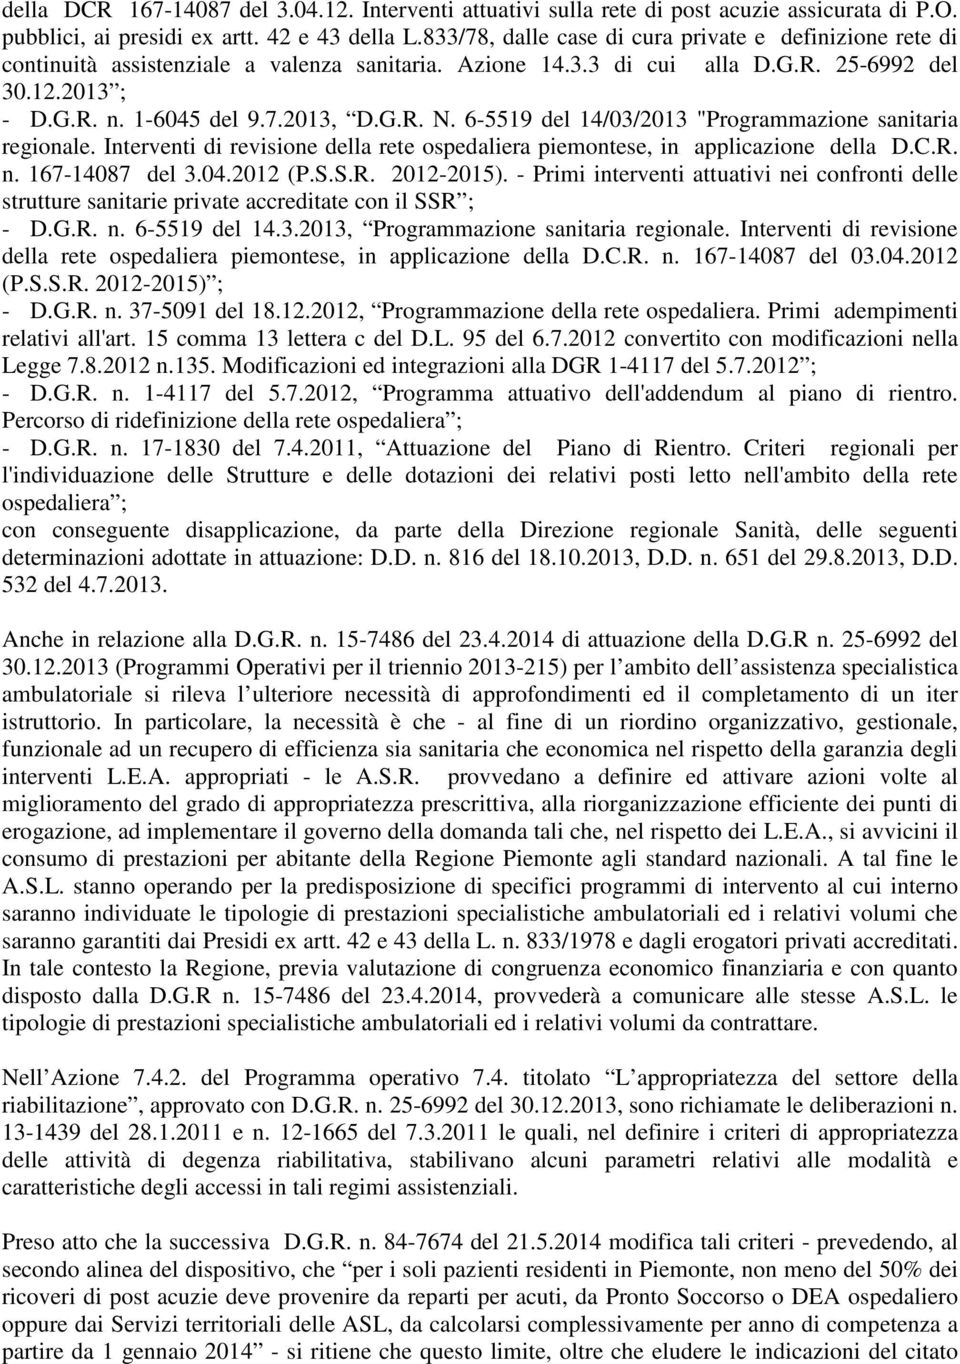 6-5519 del 14/03/2013 "Programmazione sanitaria regionale. Interventi di revisione della rete ospedaliera piemontese, in applicazione della D.C.R. n. 167-14087 del 3.04.2012 (P.S.S.R. 2012-2015).